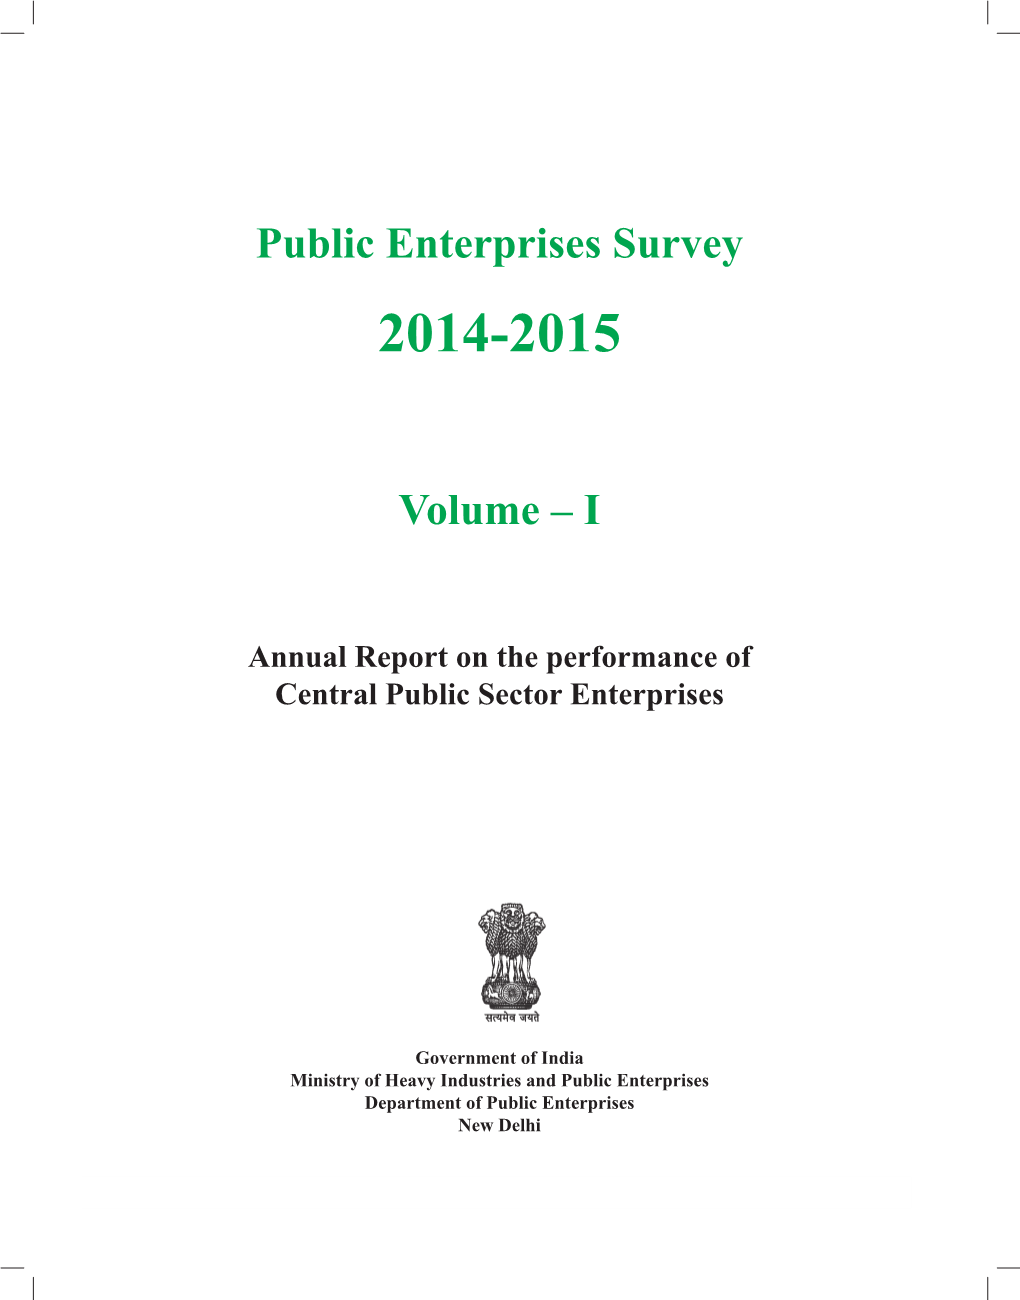 Public Enterprises Survey Volume